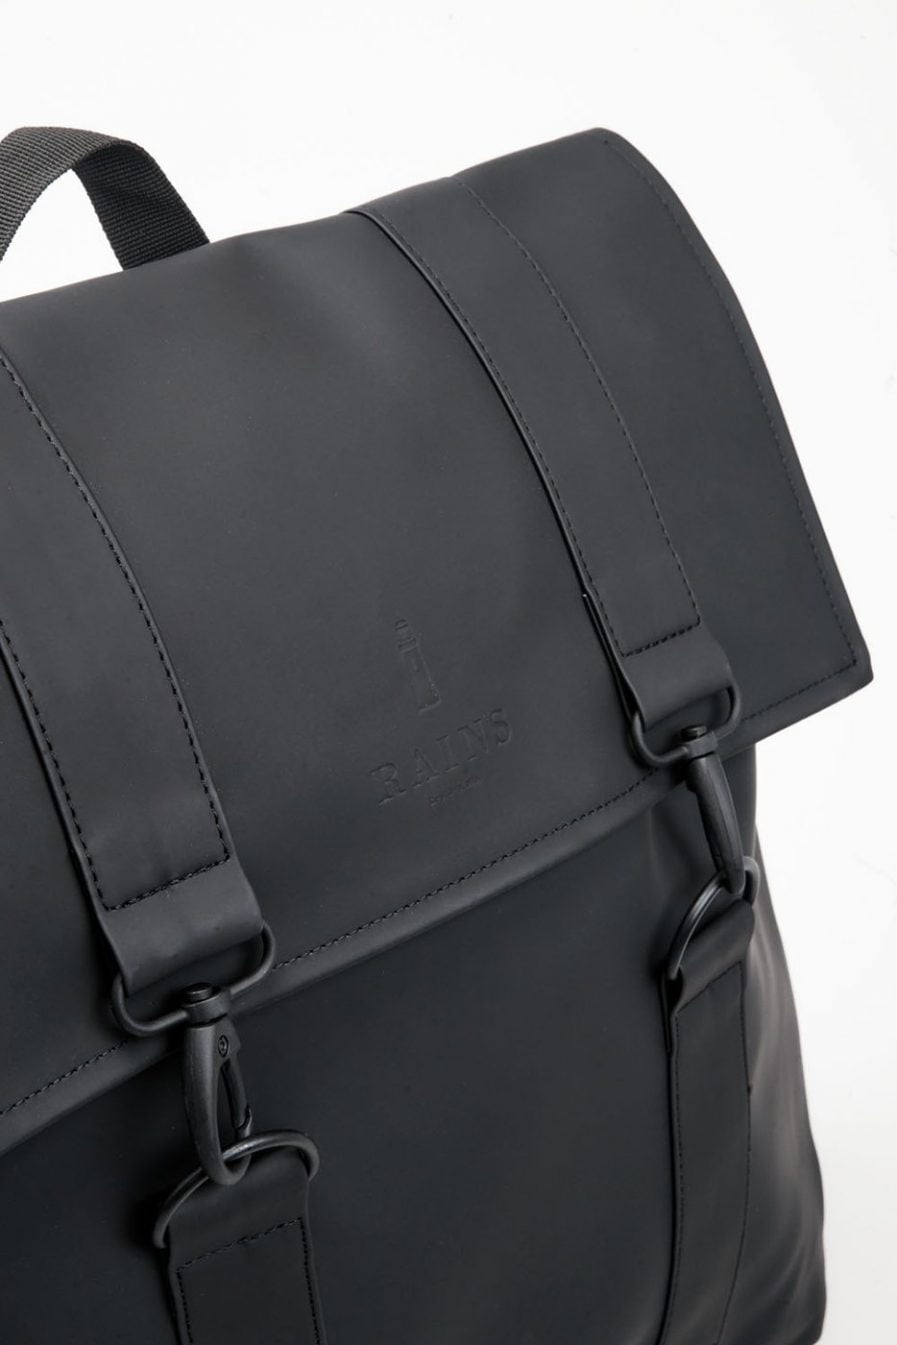 RAINS Backpack Msn Bag Black